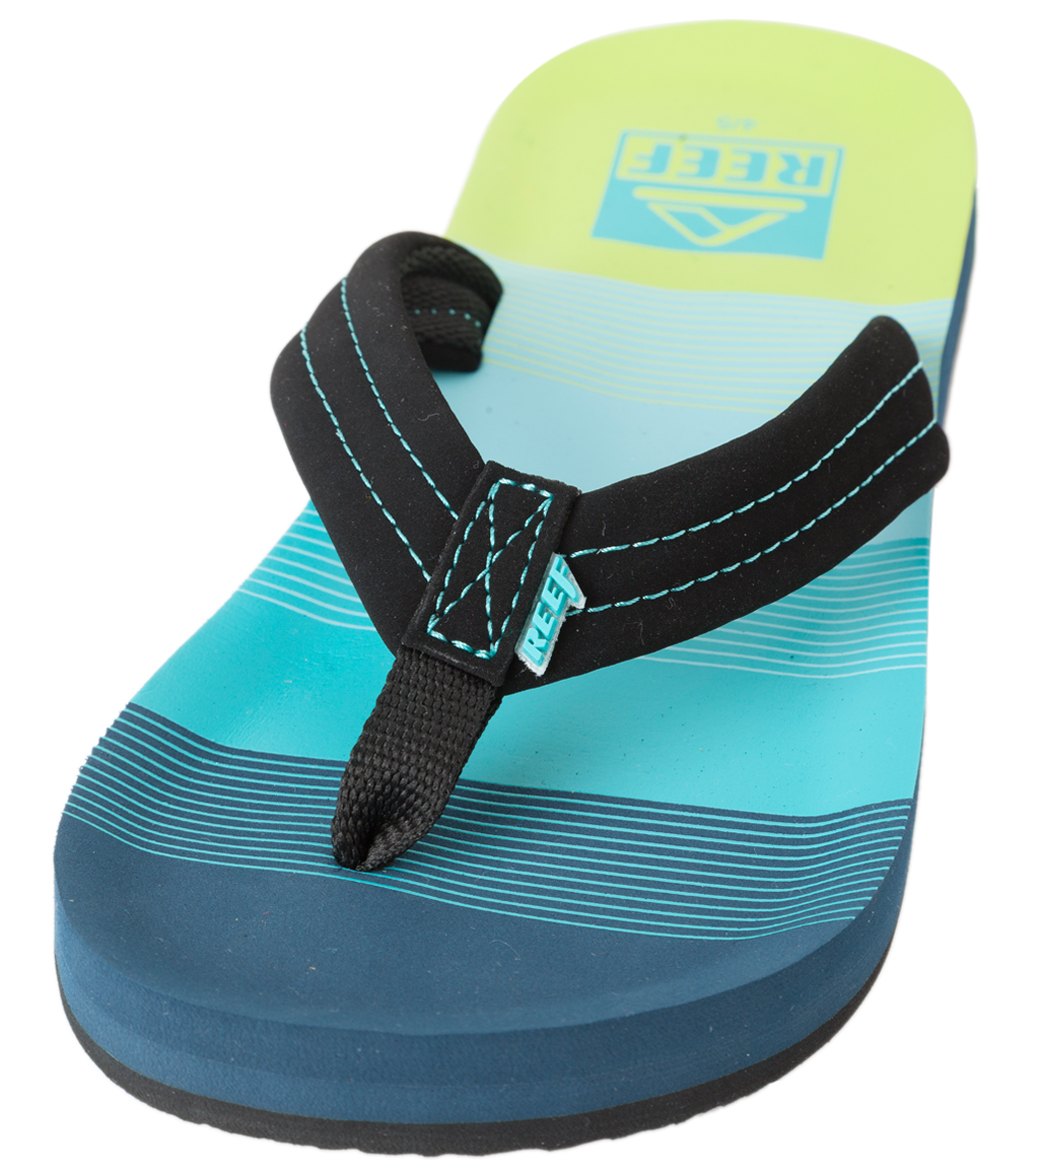 Reef Boys' Ahi Sandals - Aqua/Green 5/6 Eva/Foam/Polyester - Swimoutlet.com